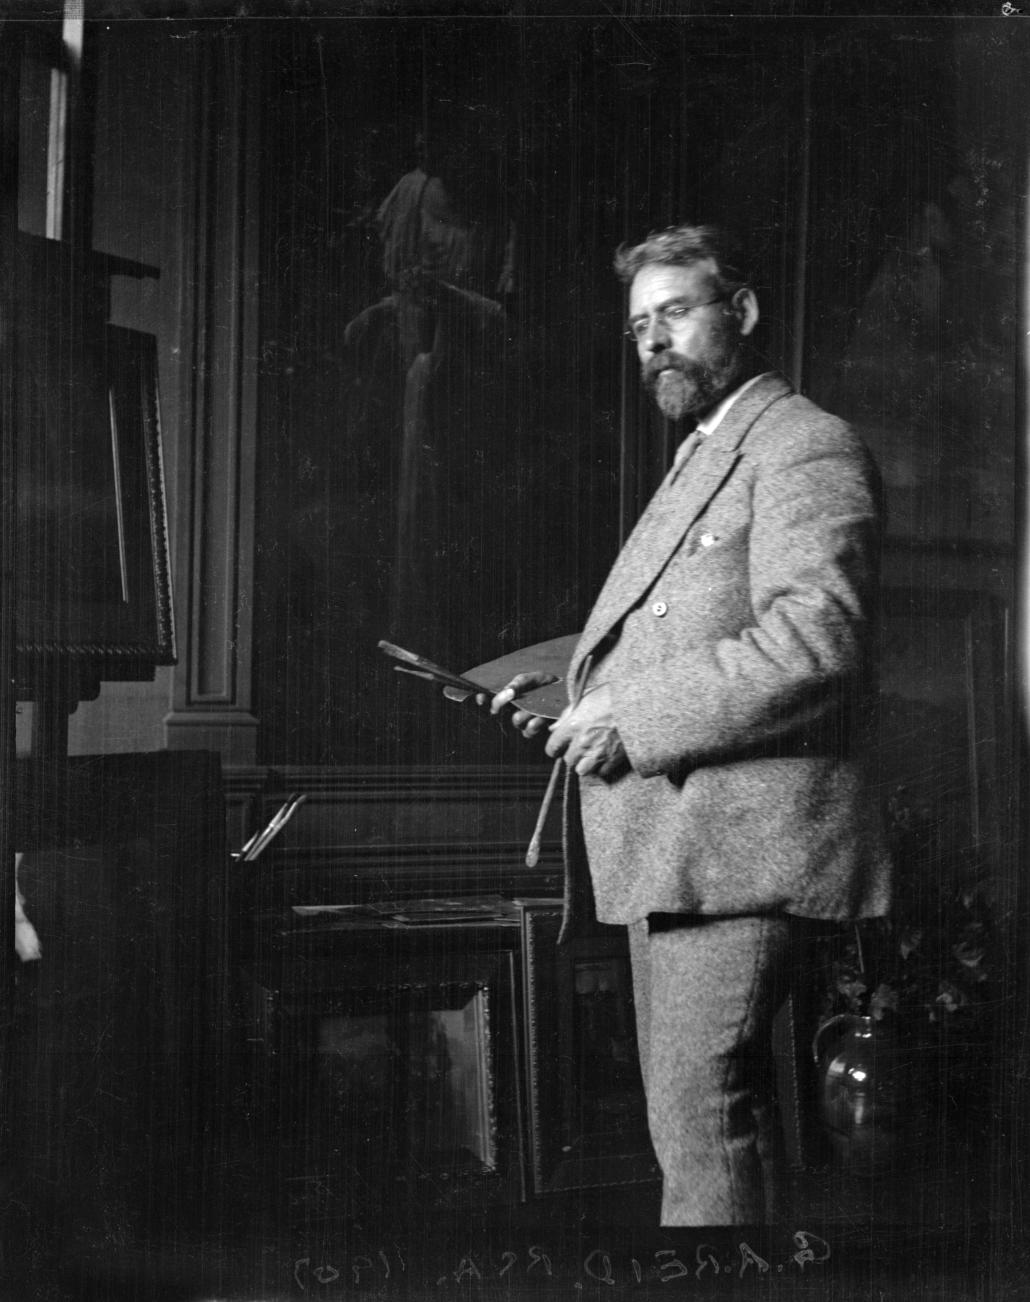 George Agnew Reid à son domicile, 25 octobre 1907